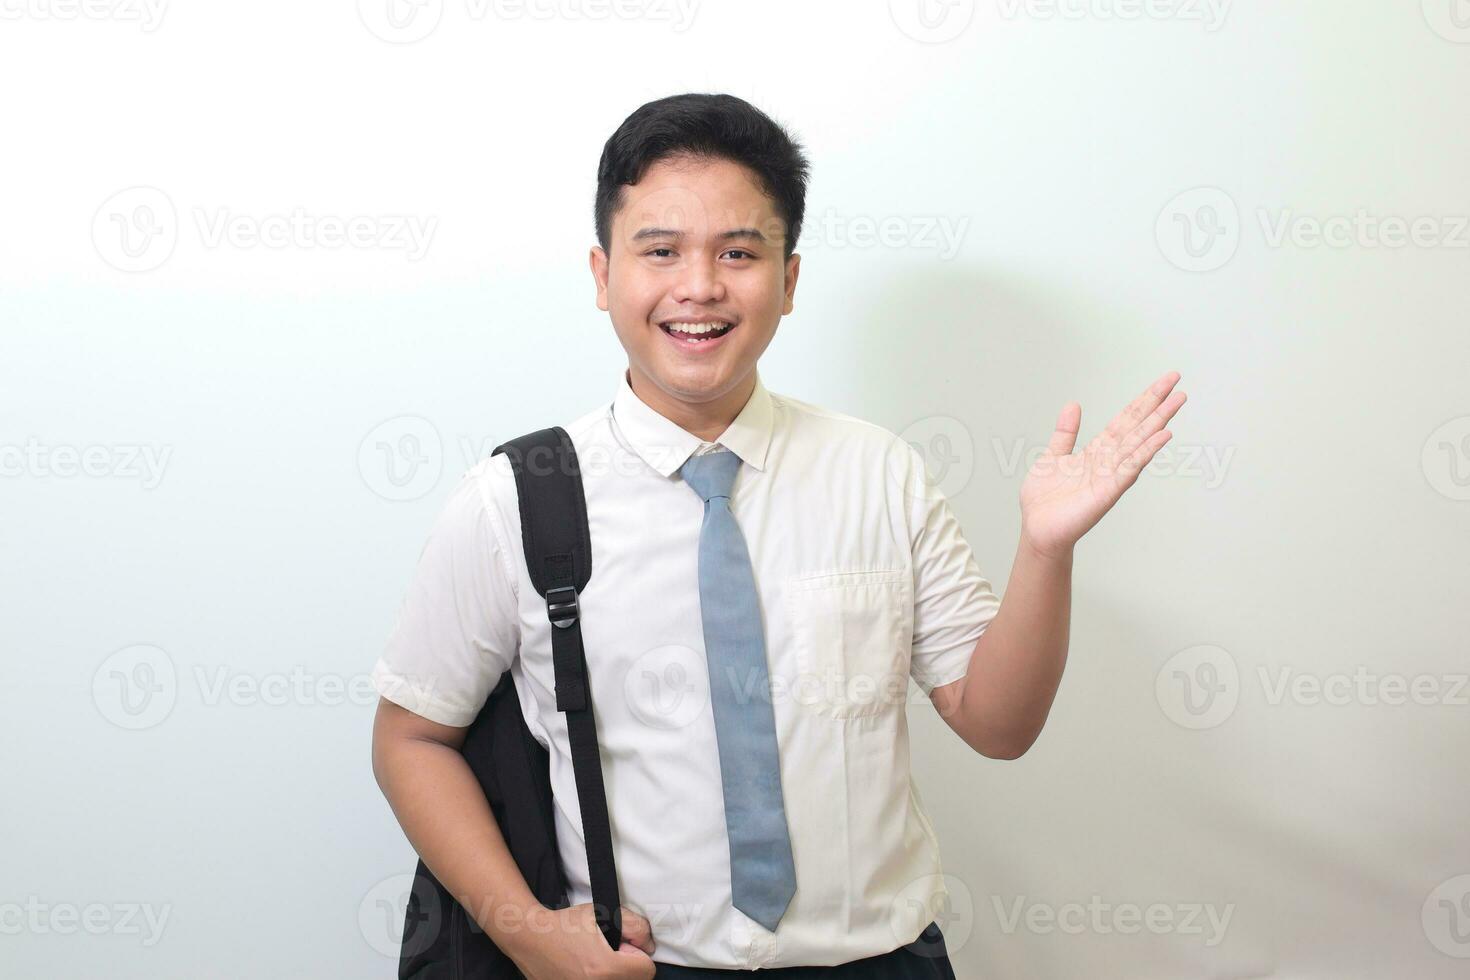 indonésien Sénior haute école étudiant portant blanc chemise uniforme avec gris attacher montrant produit, montrer du doigt à quelque chose et souriant. isolé image sur blanc Contexte photo